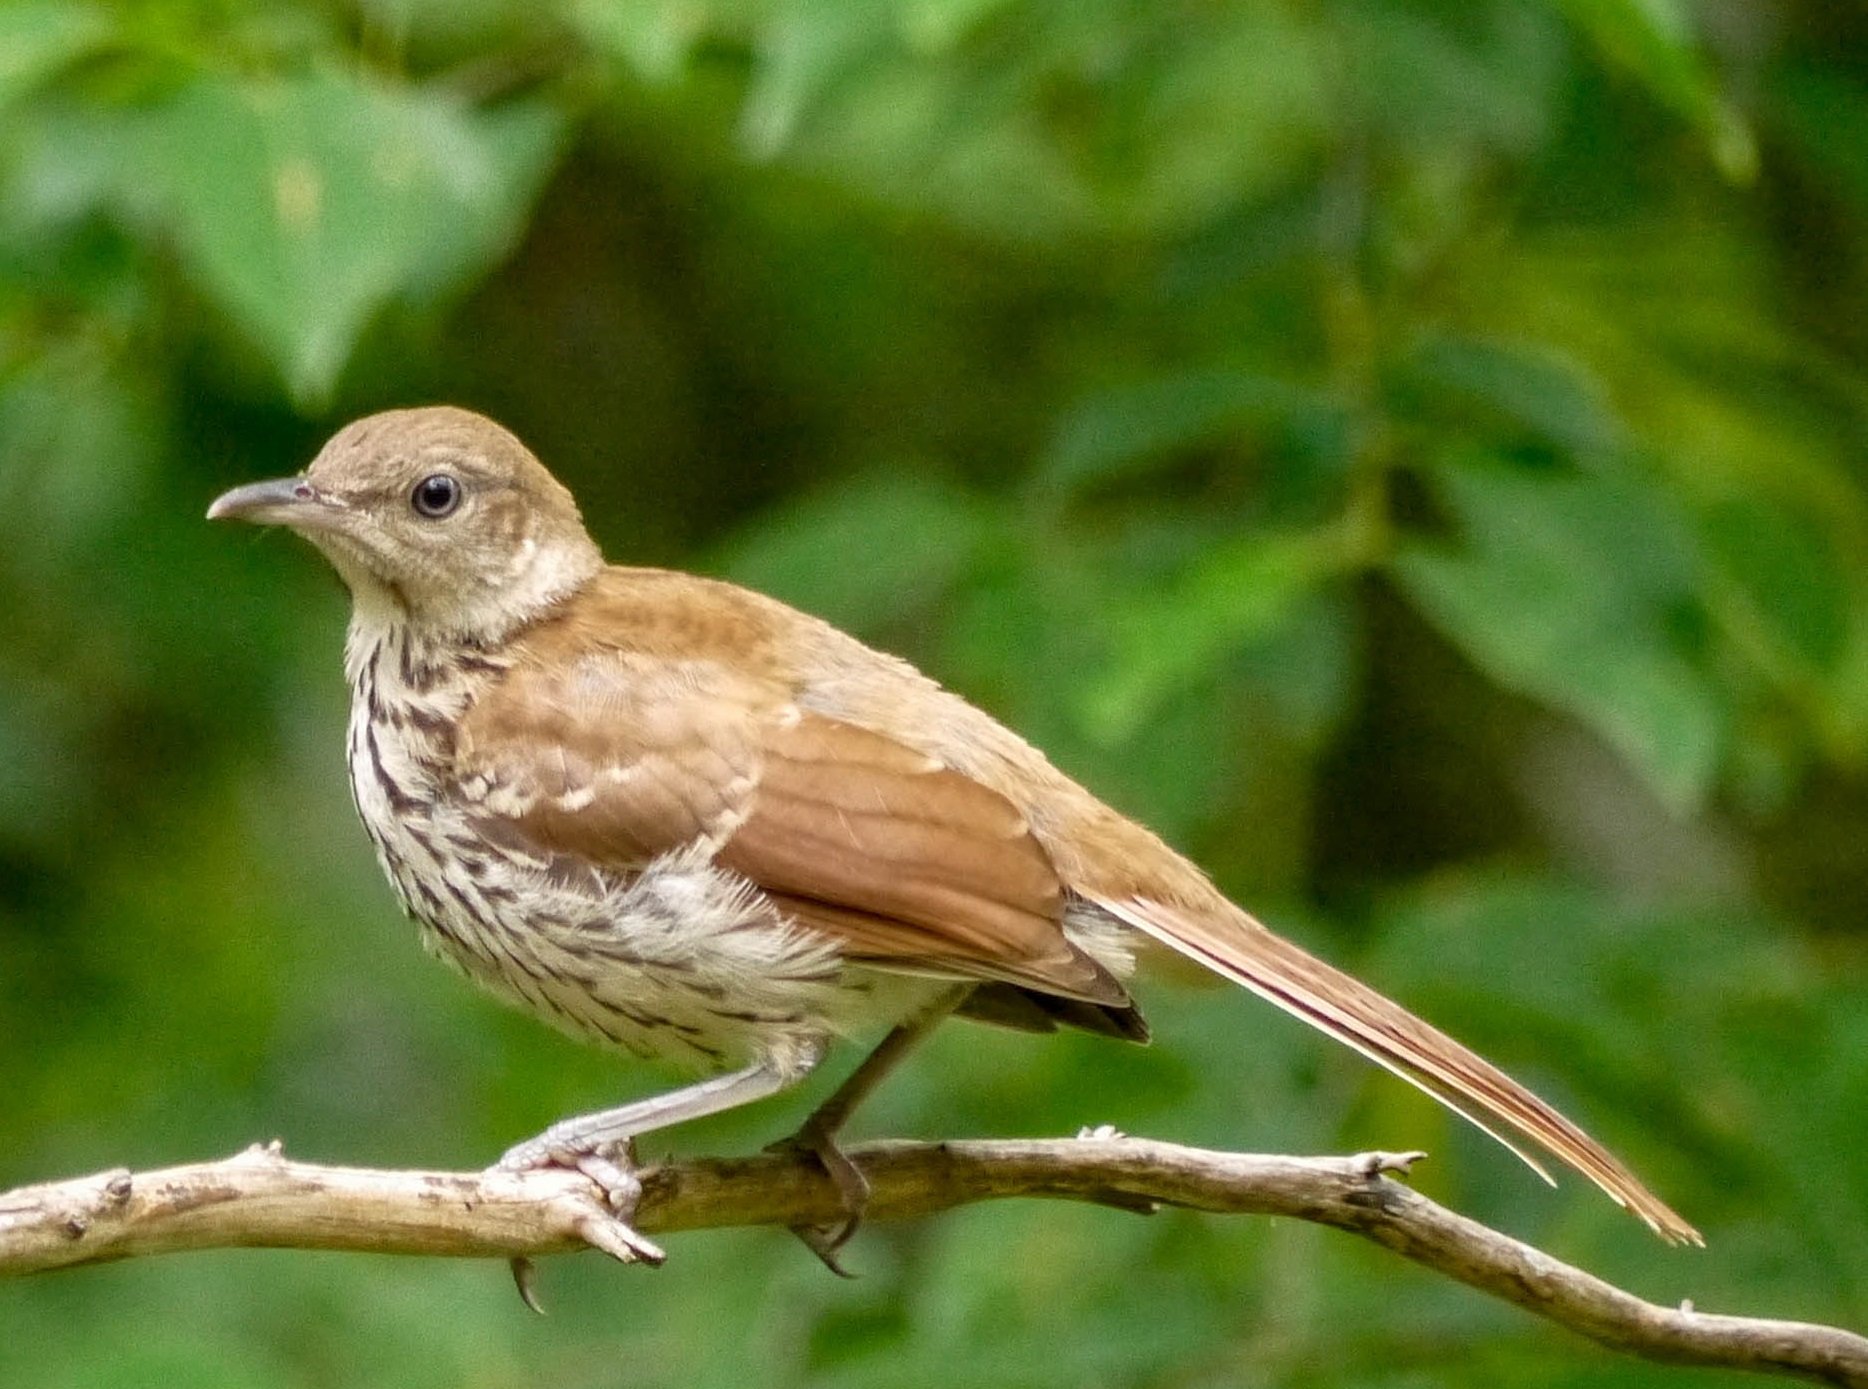 georgias state bird